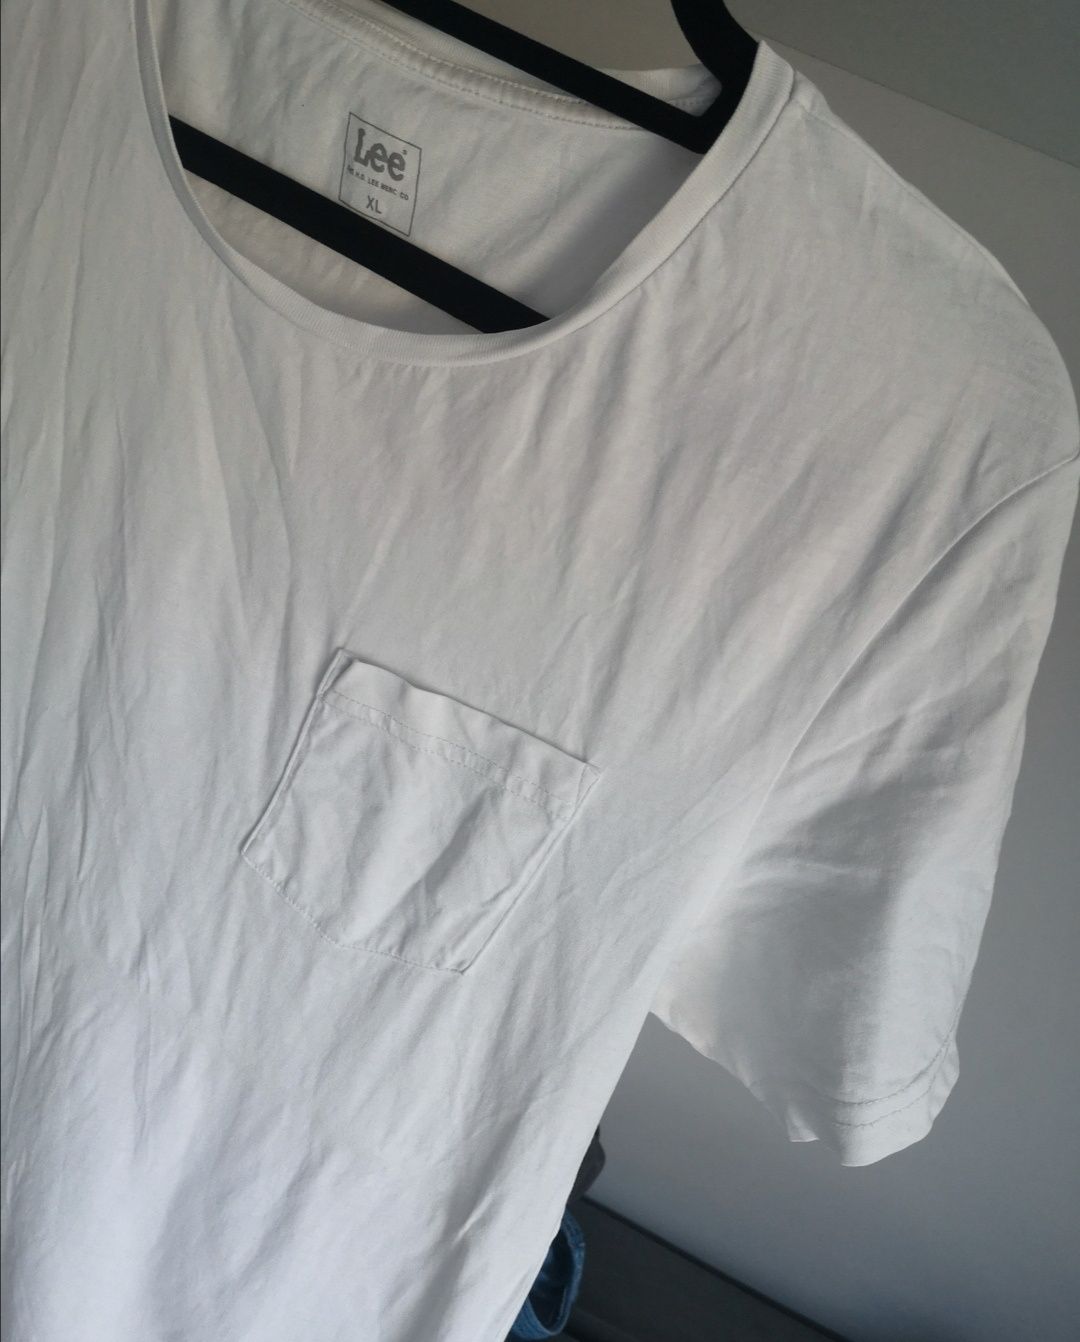 Lee klasyczny biały t-shirt bawełna XL